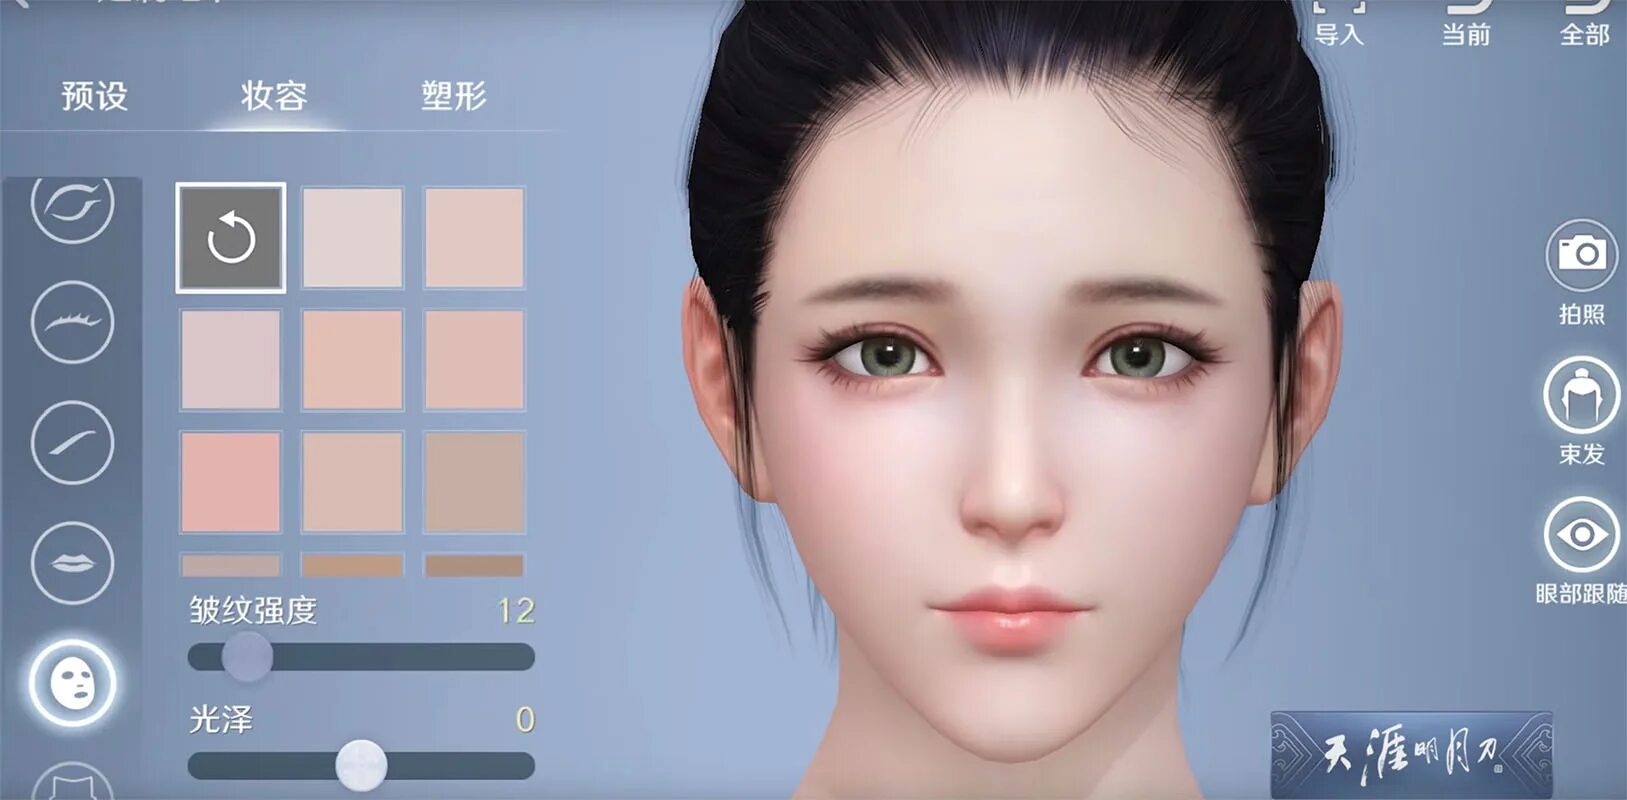 Character ai login. Приложения для создавания лицо. Корейские игры на андроид. Корейские компьютерные игры. Персонажи корейских игр.